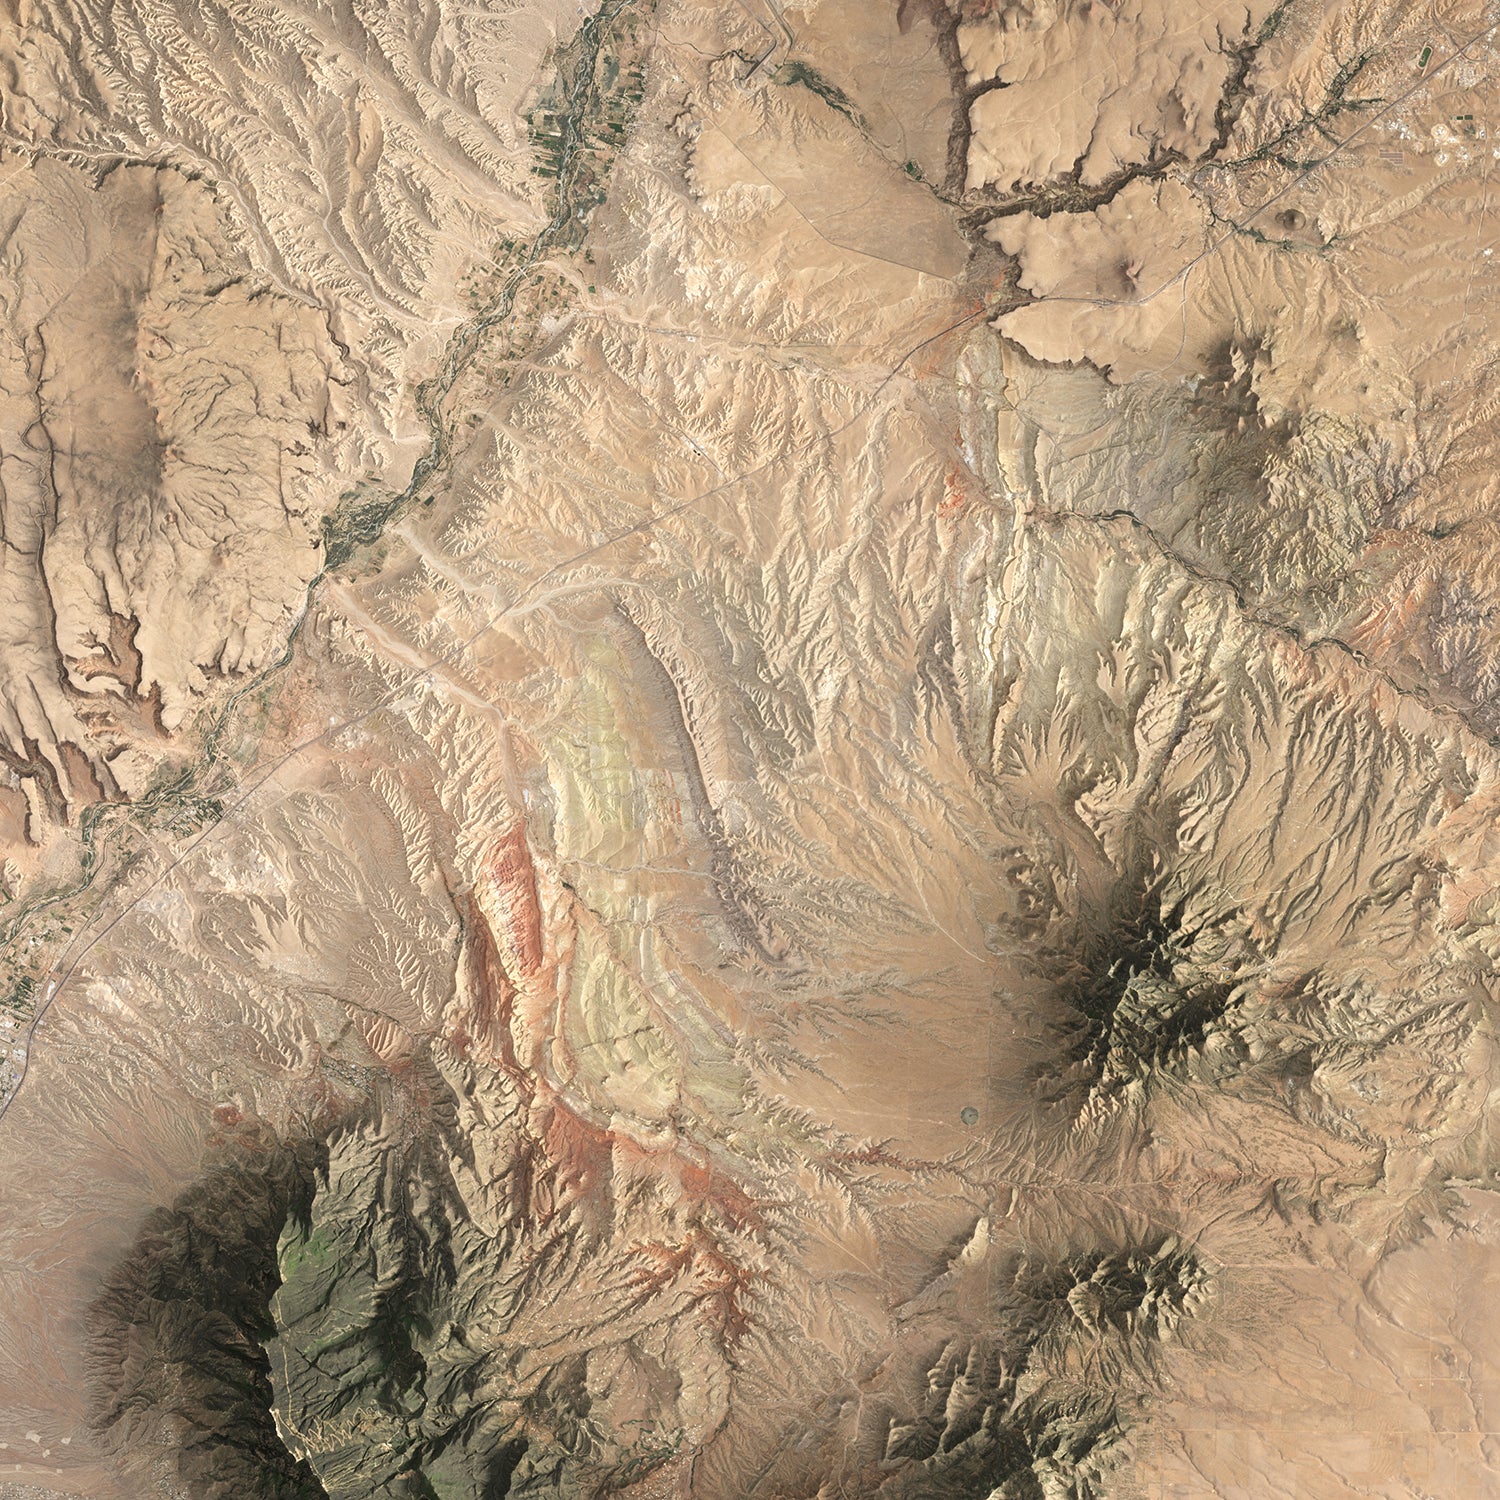 Albuquerque and Santa Fe - Satellite Imagery